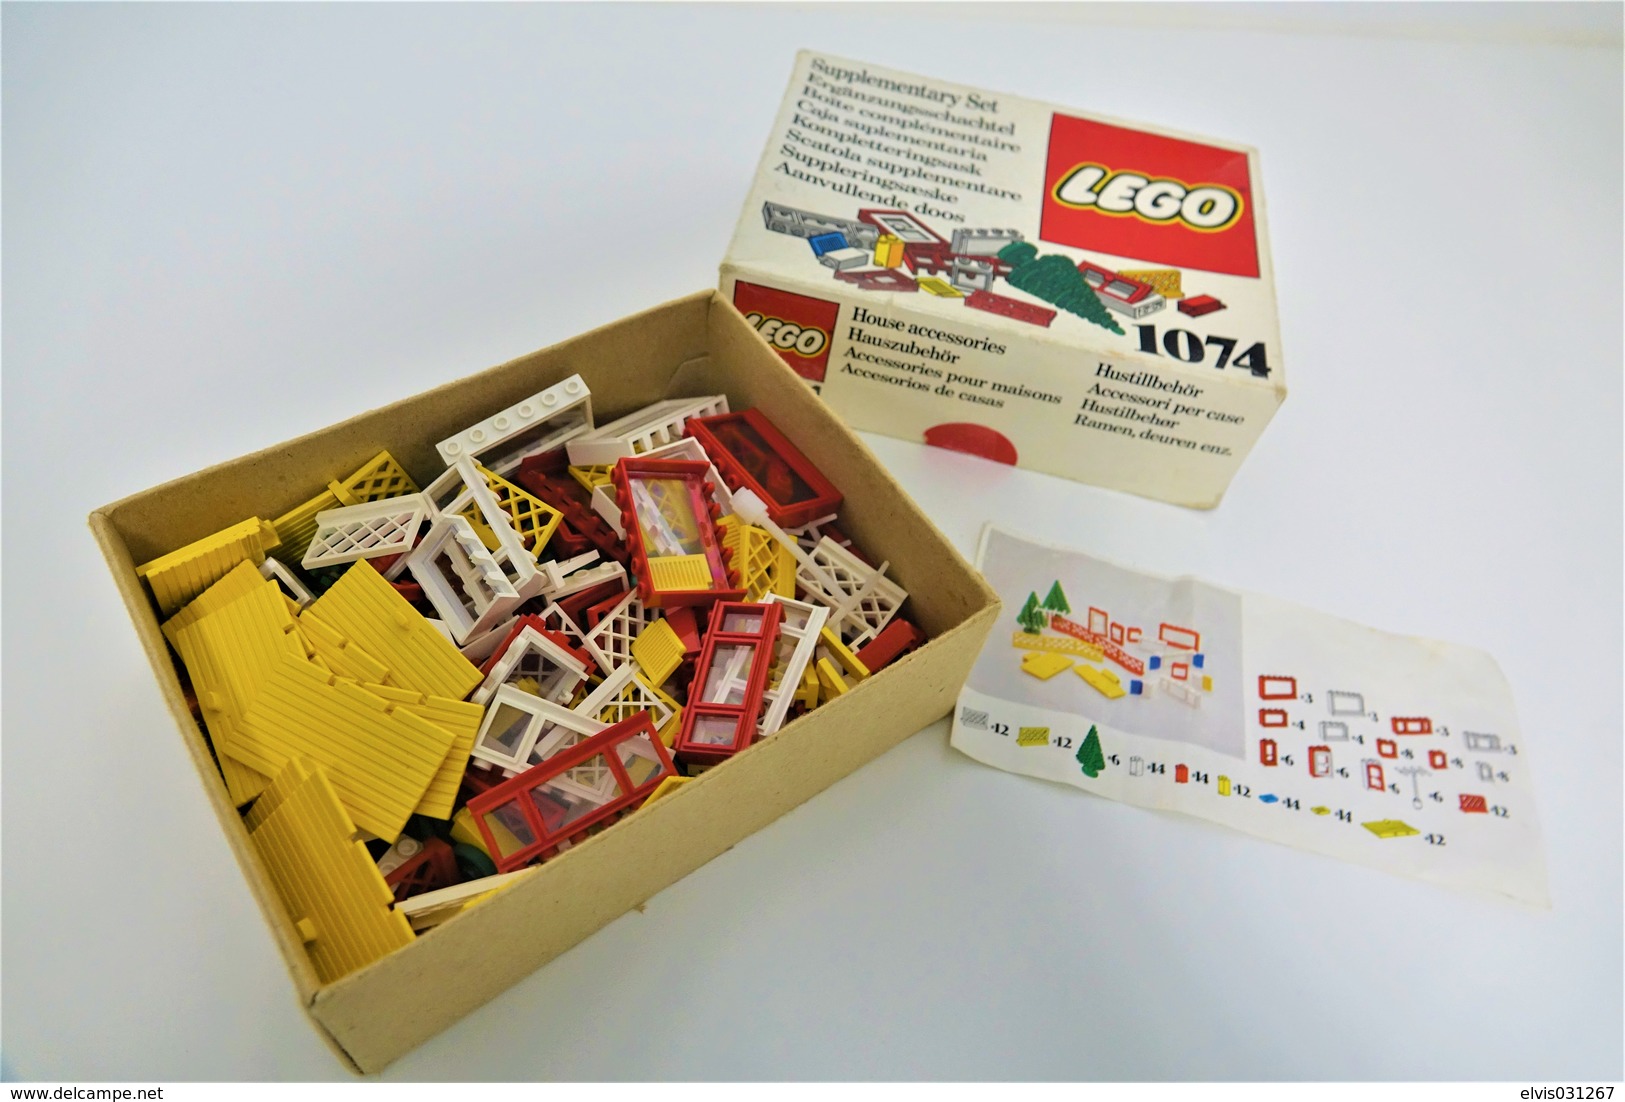 LEGO - 1074 Supplementary Box -very Rare - Original Box - Original Lego 1976 - Vintage - Catalogs